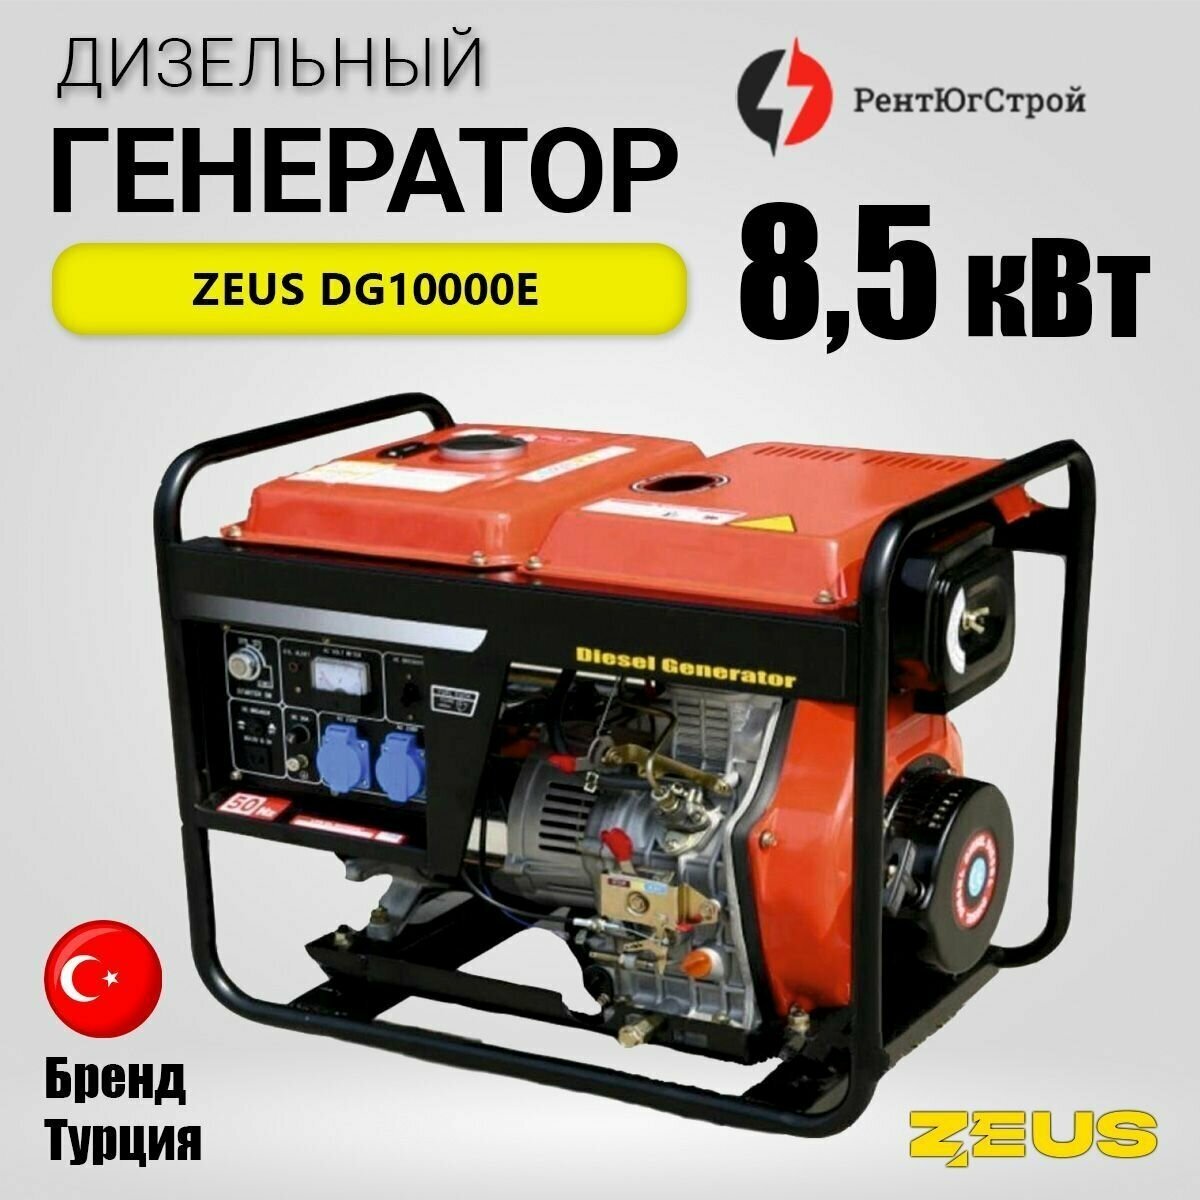 Дизельный генератор Zeus DG10000E 8,5 кВт, 230В/50Гц. с электростартером